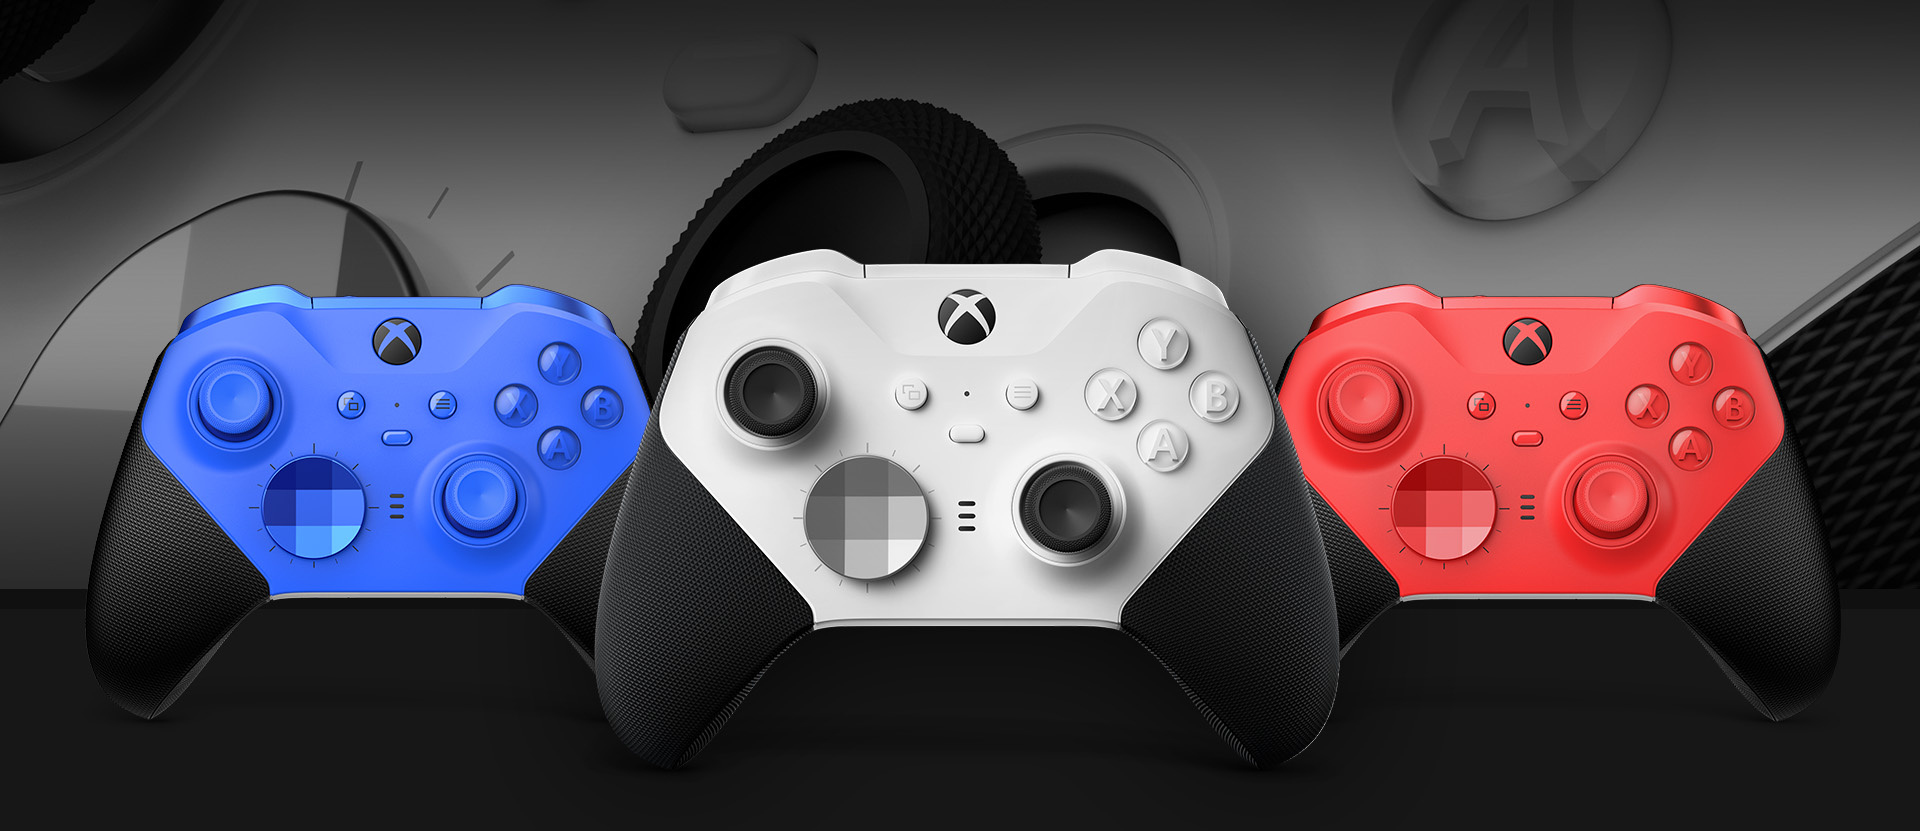 Az Xbox Elite Series 2 – Core (fehér) vezeték nélküli kontroller elölnézete, mellette megjelenített egyéb színlehetőségekkel. A háttérben a kontroller karjainak és textúrázott markolatának közelképe figyelhető meg.